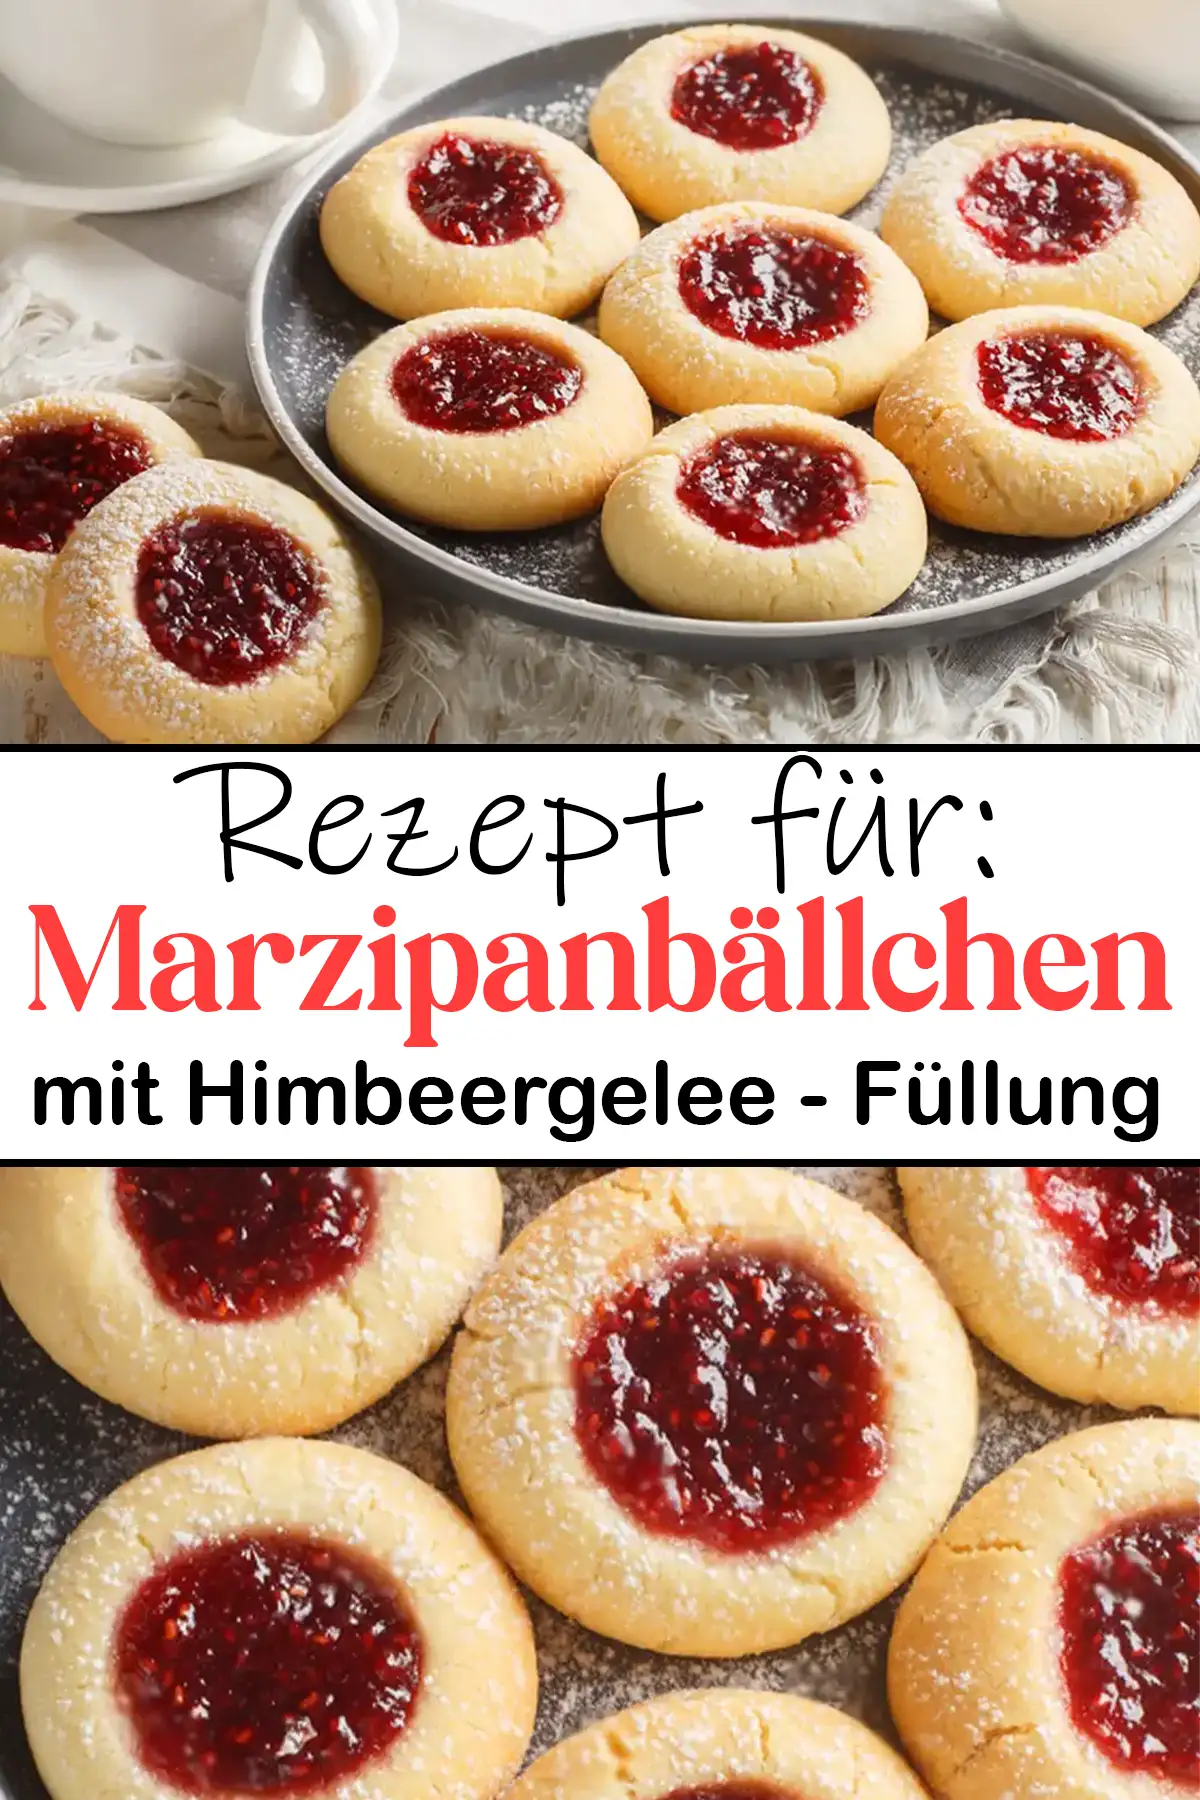 Marzipanbällchen mit Himbeergelee - Füllung : Weihnachtsplätzchen Rezept